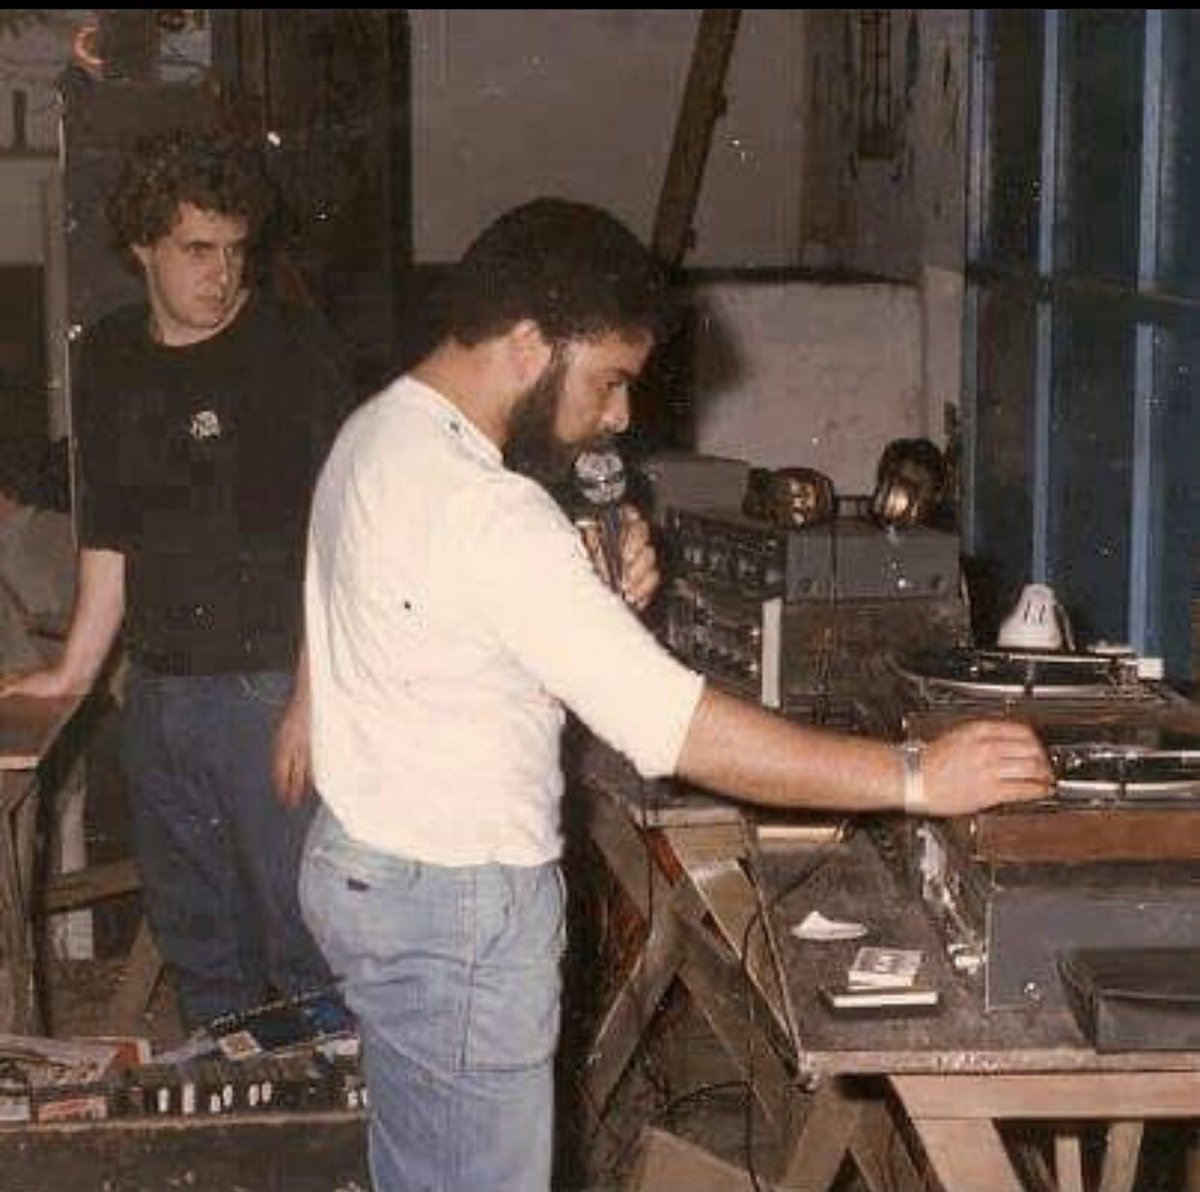 Vc sabia q PT a princípio significava PsyTrance?
Aqui Lula testando as tracks mais quentes vindas de Goa nos anos 90.